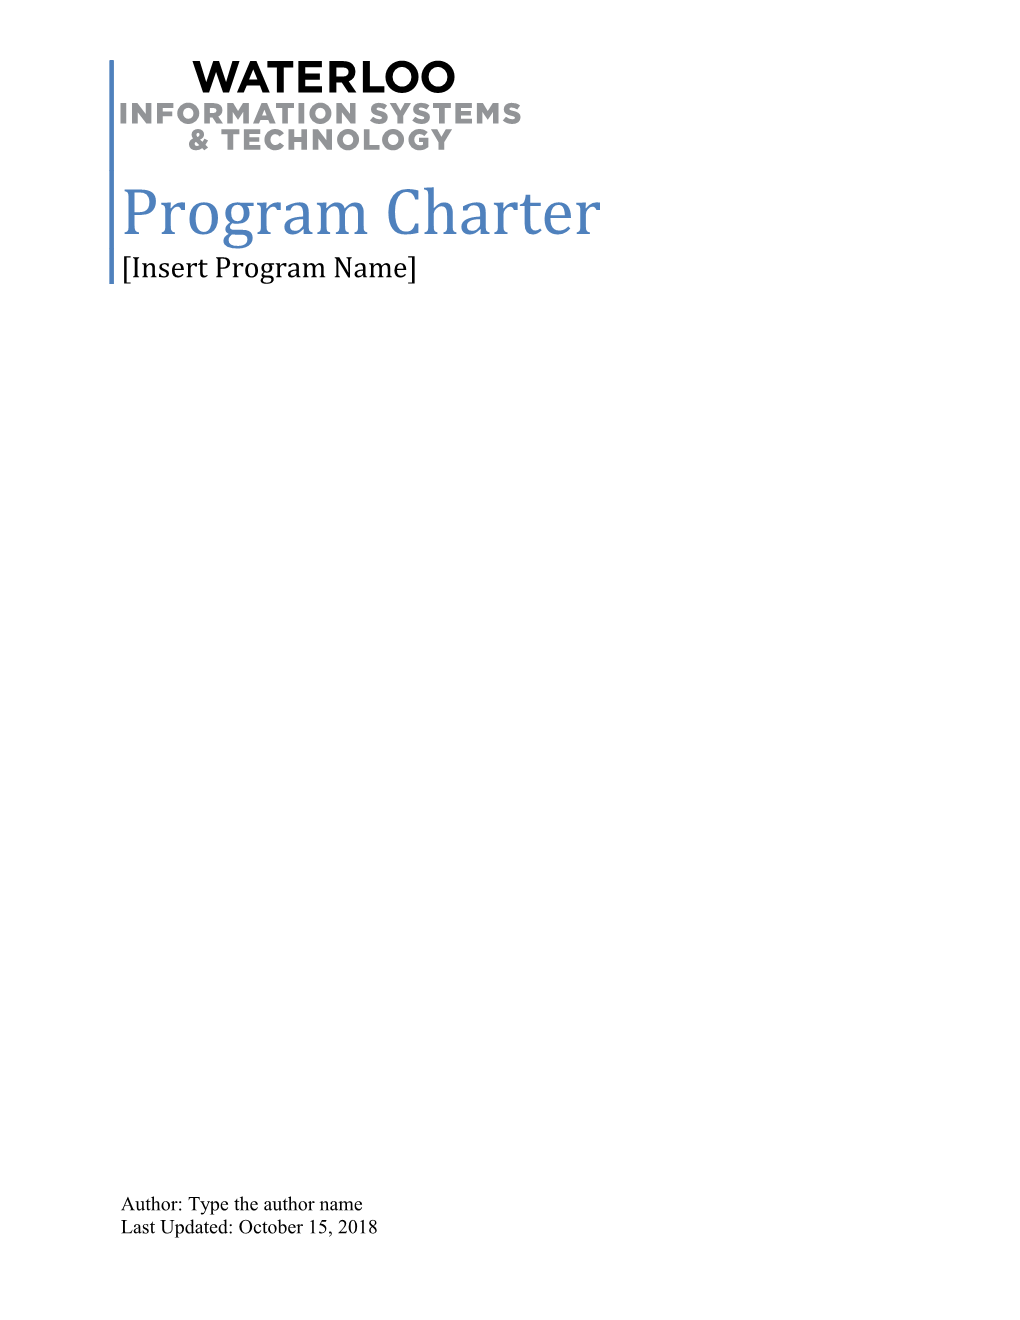 Program Charter Insert Program Name